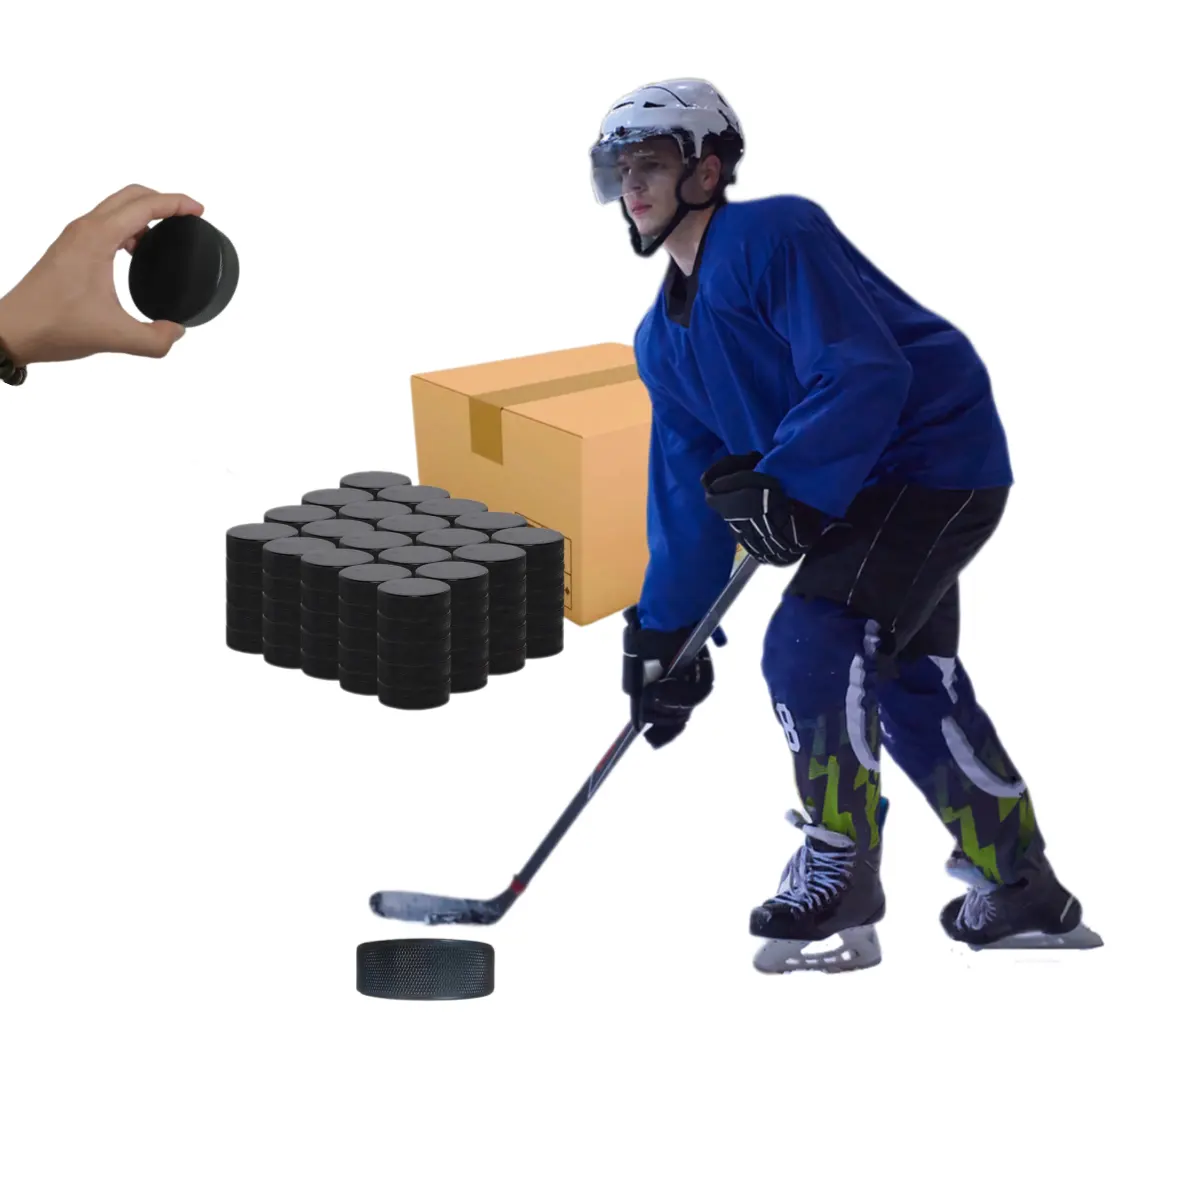 Оптовая продажа, высокое качество, прочные шайбы для хоккея на траве, Хоккей с шайбой с индивидуальным логотипом или без одежды, однотонные резиновые шайбы для хоккея с шайбой